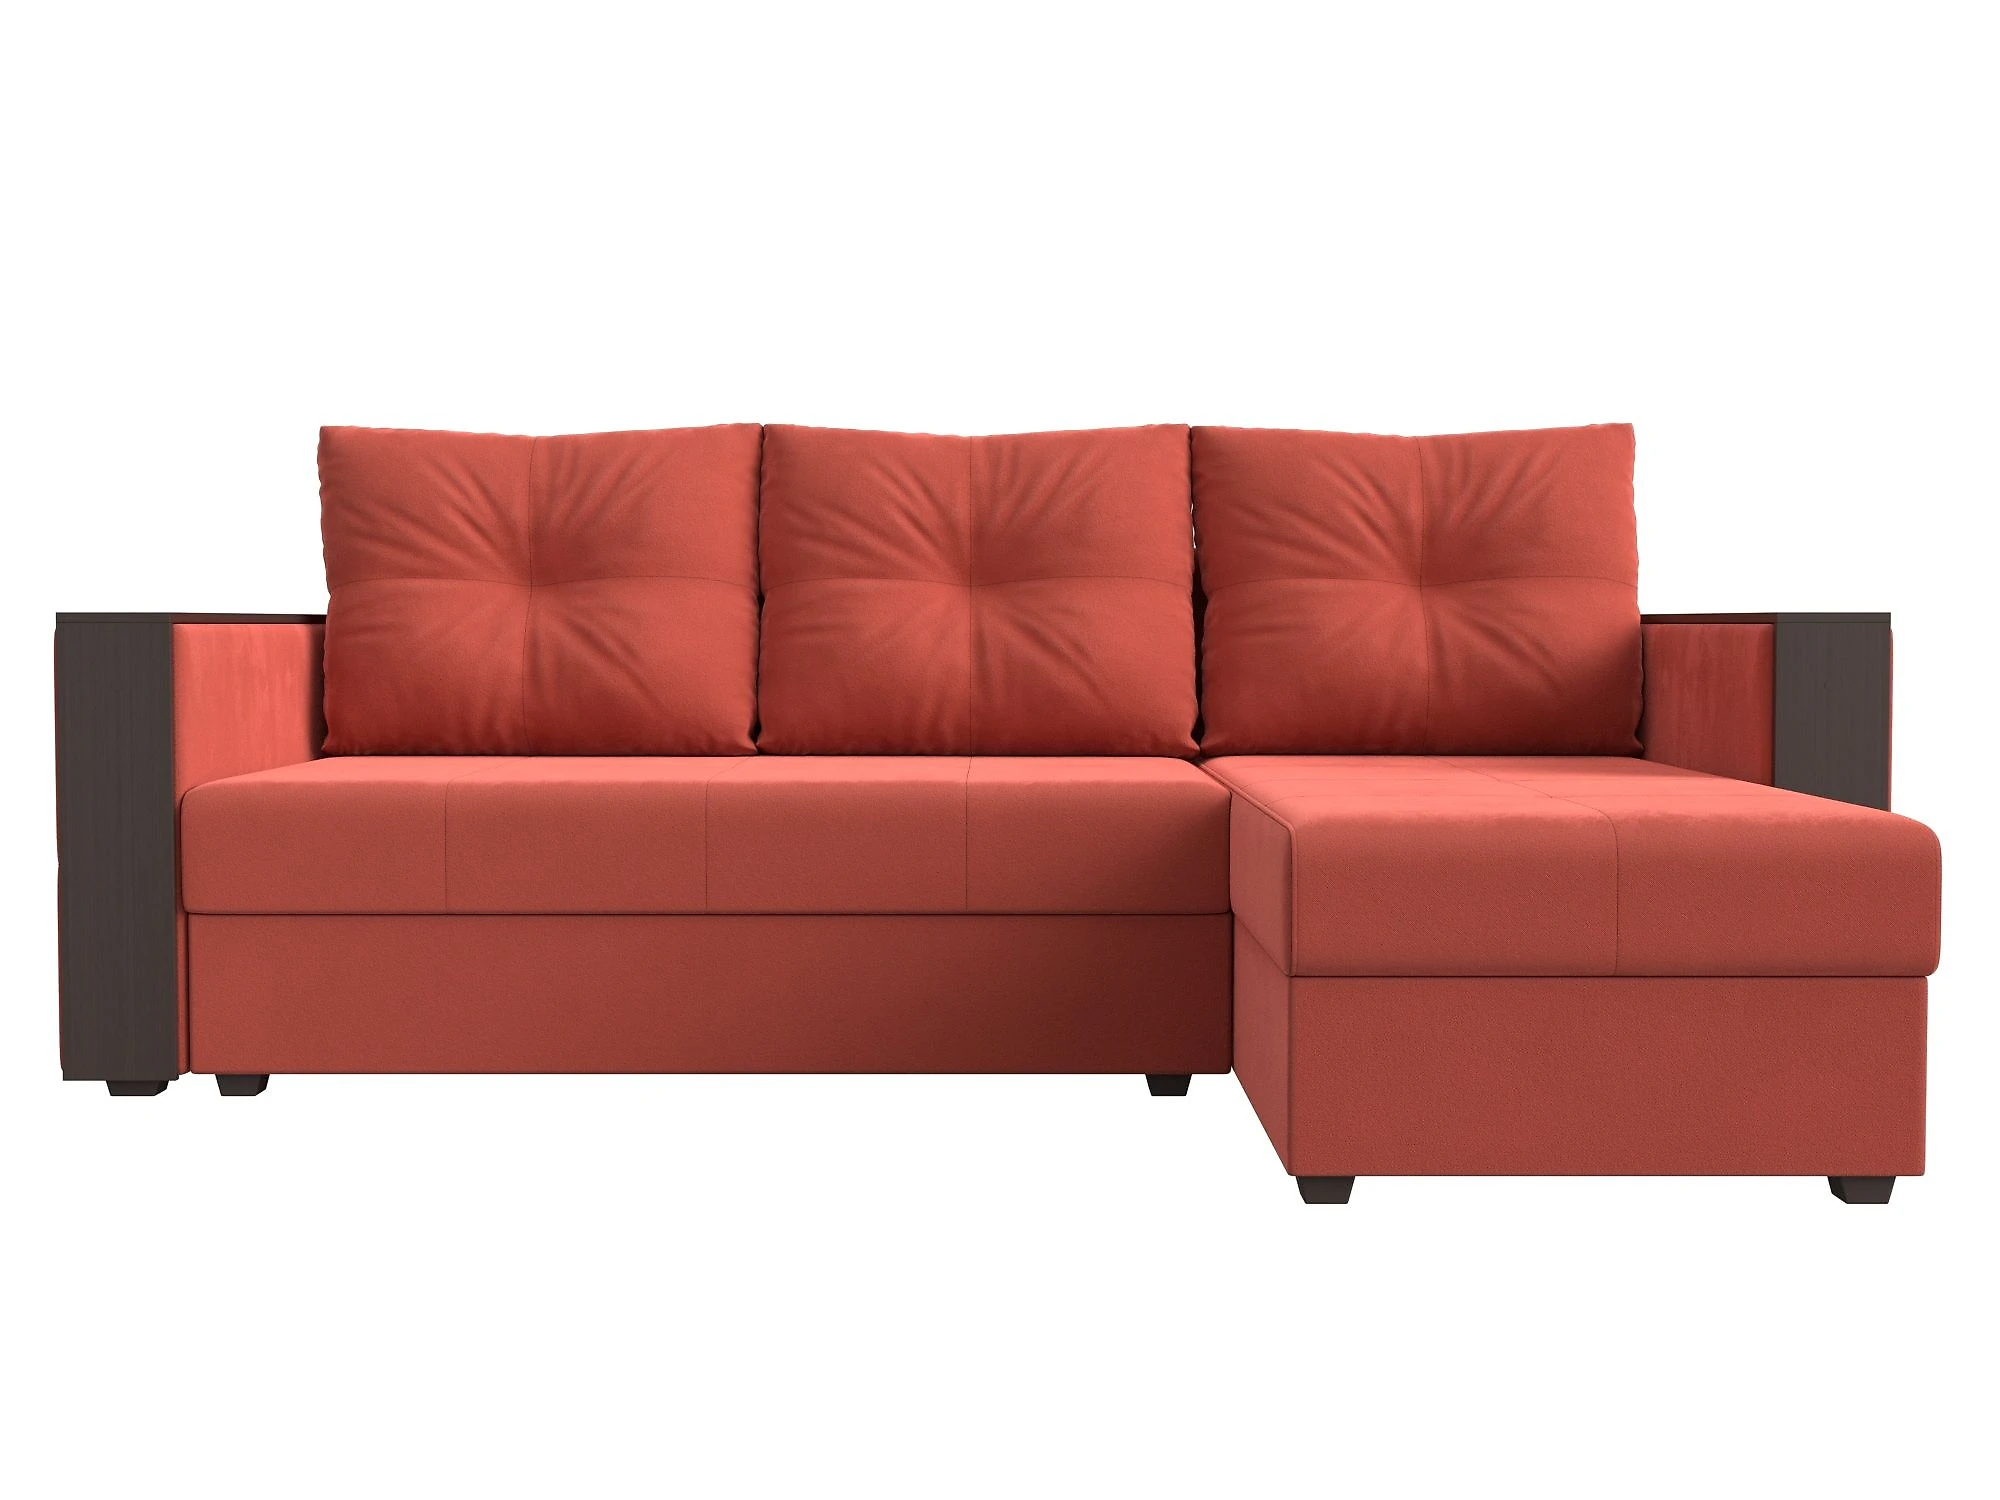 Односпальный угловой диван Валенсия Лайт Дизайн 5